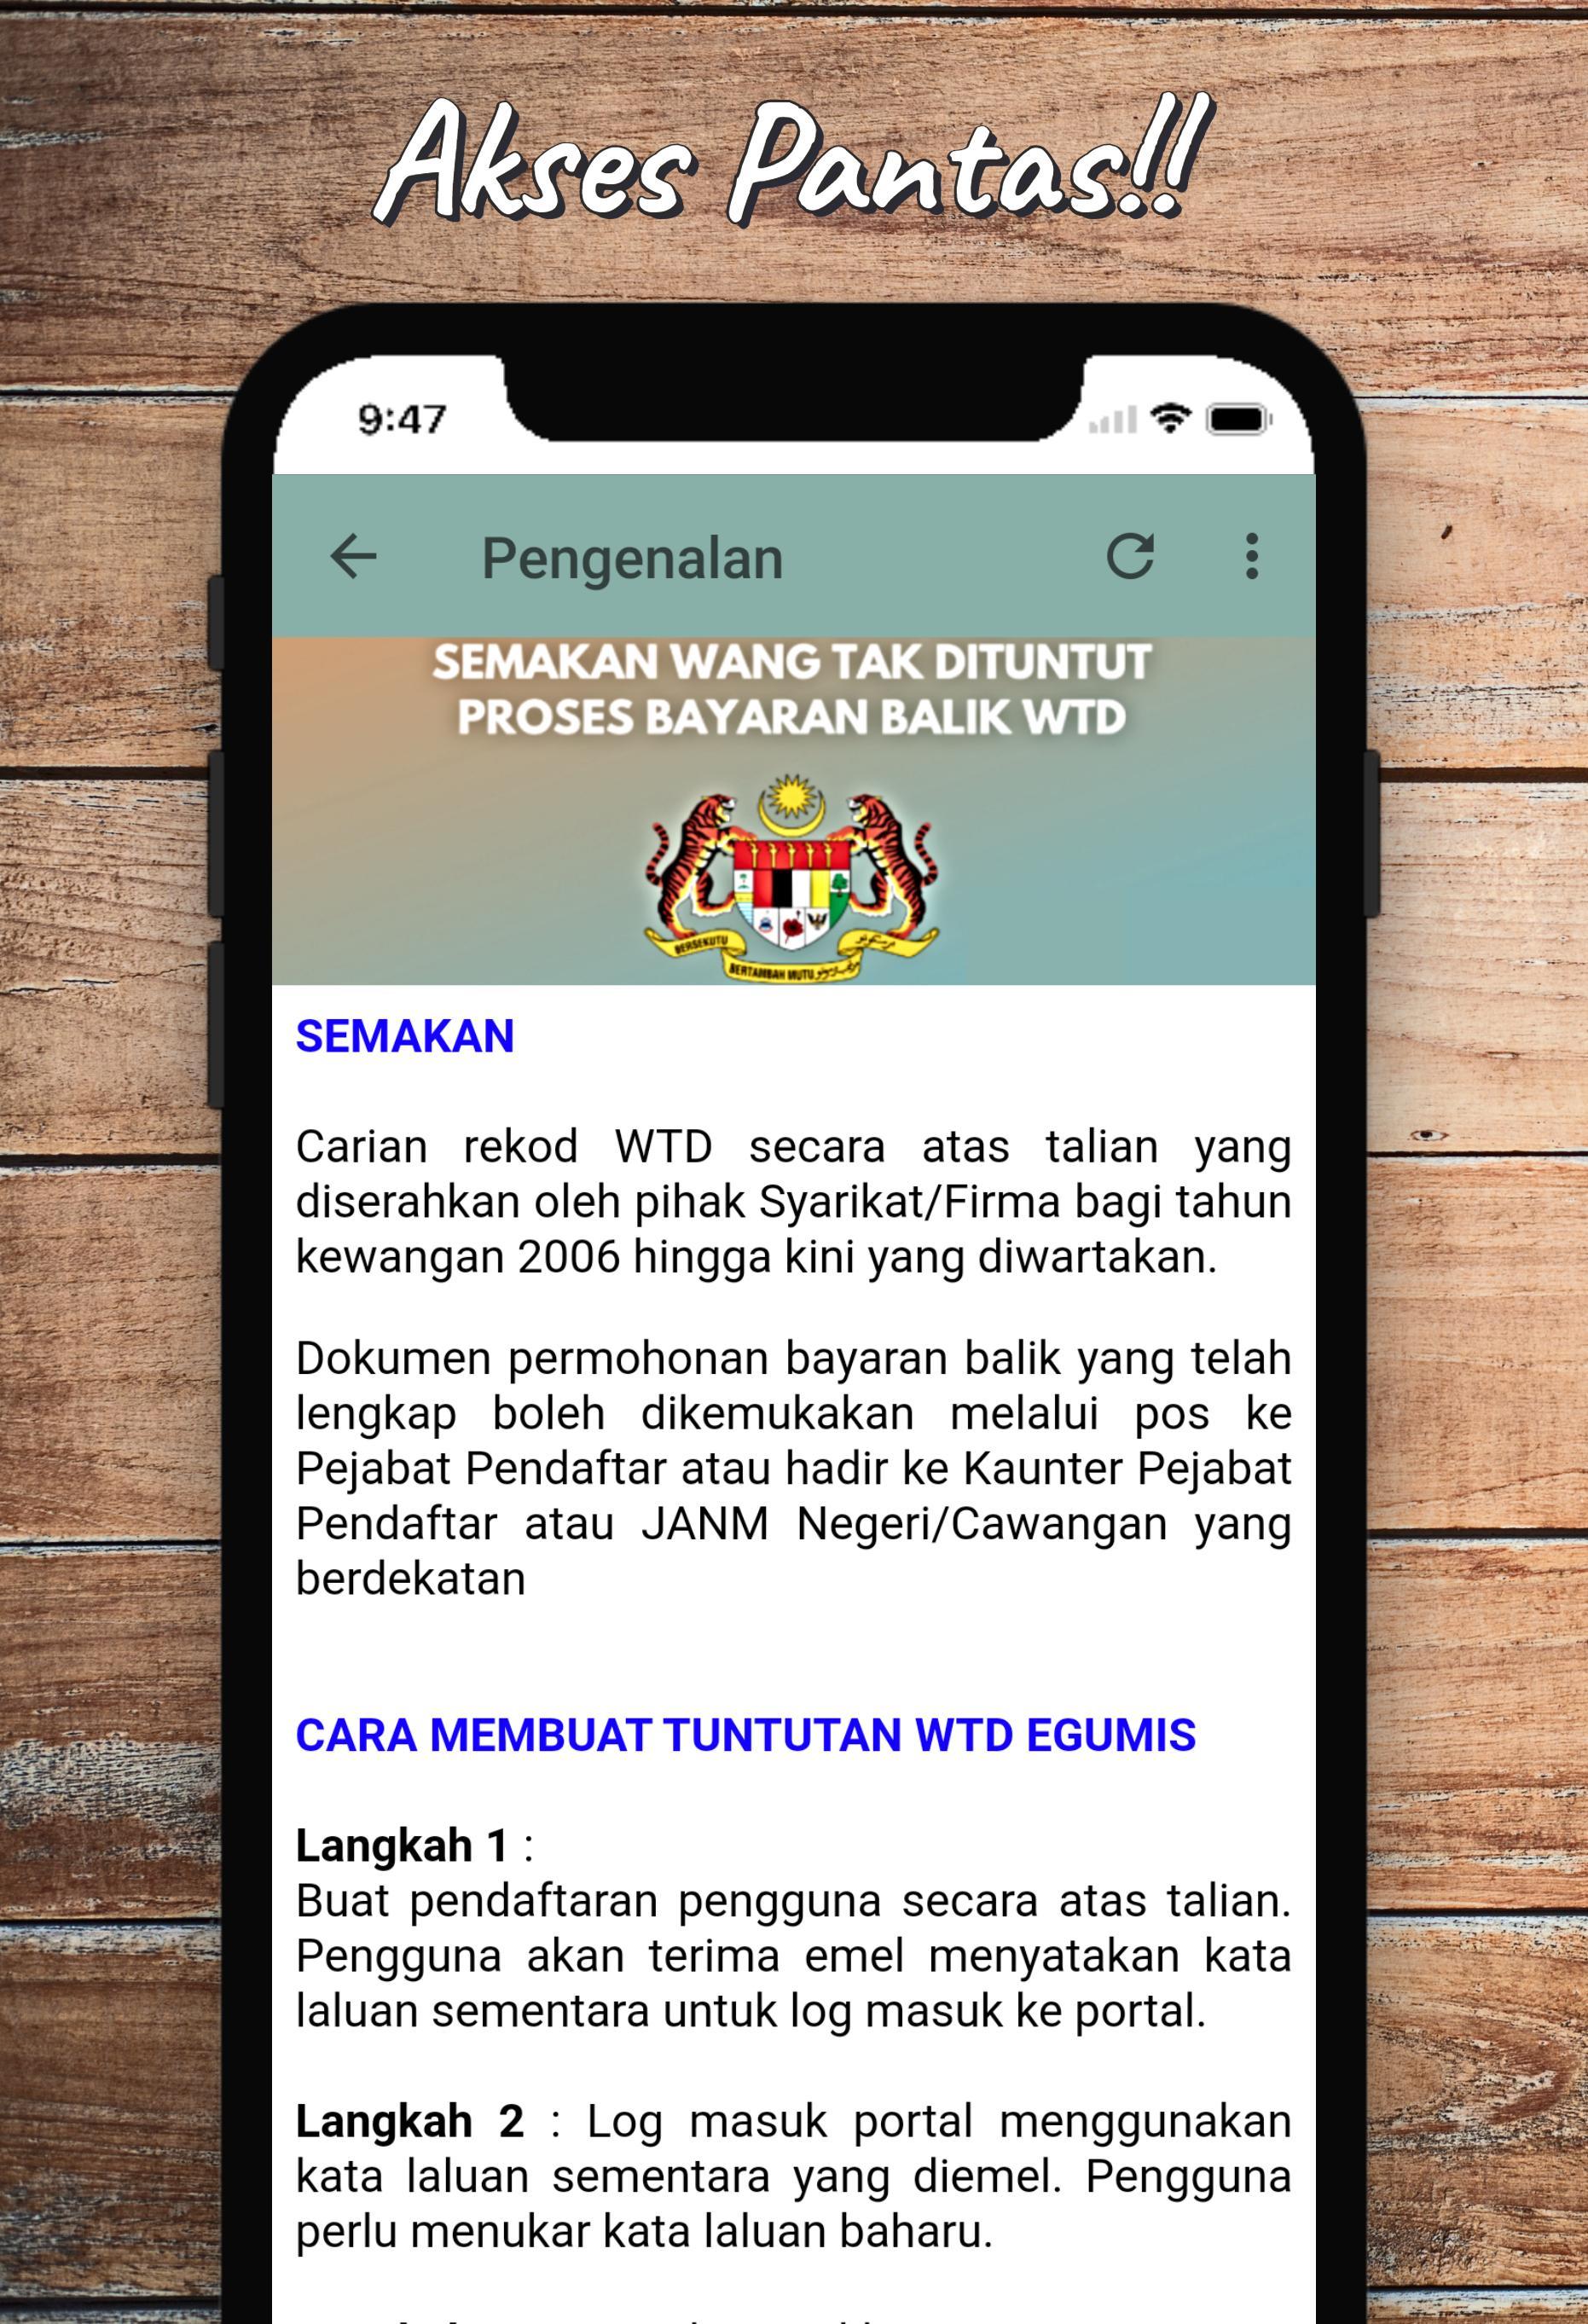 Semak Wang Tidak Dituntut For Android Apk Download